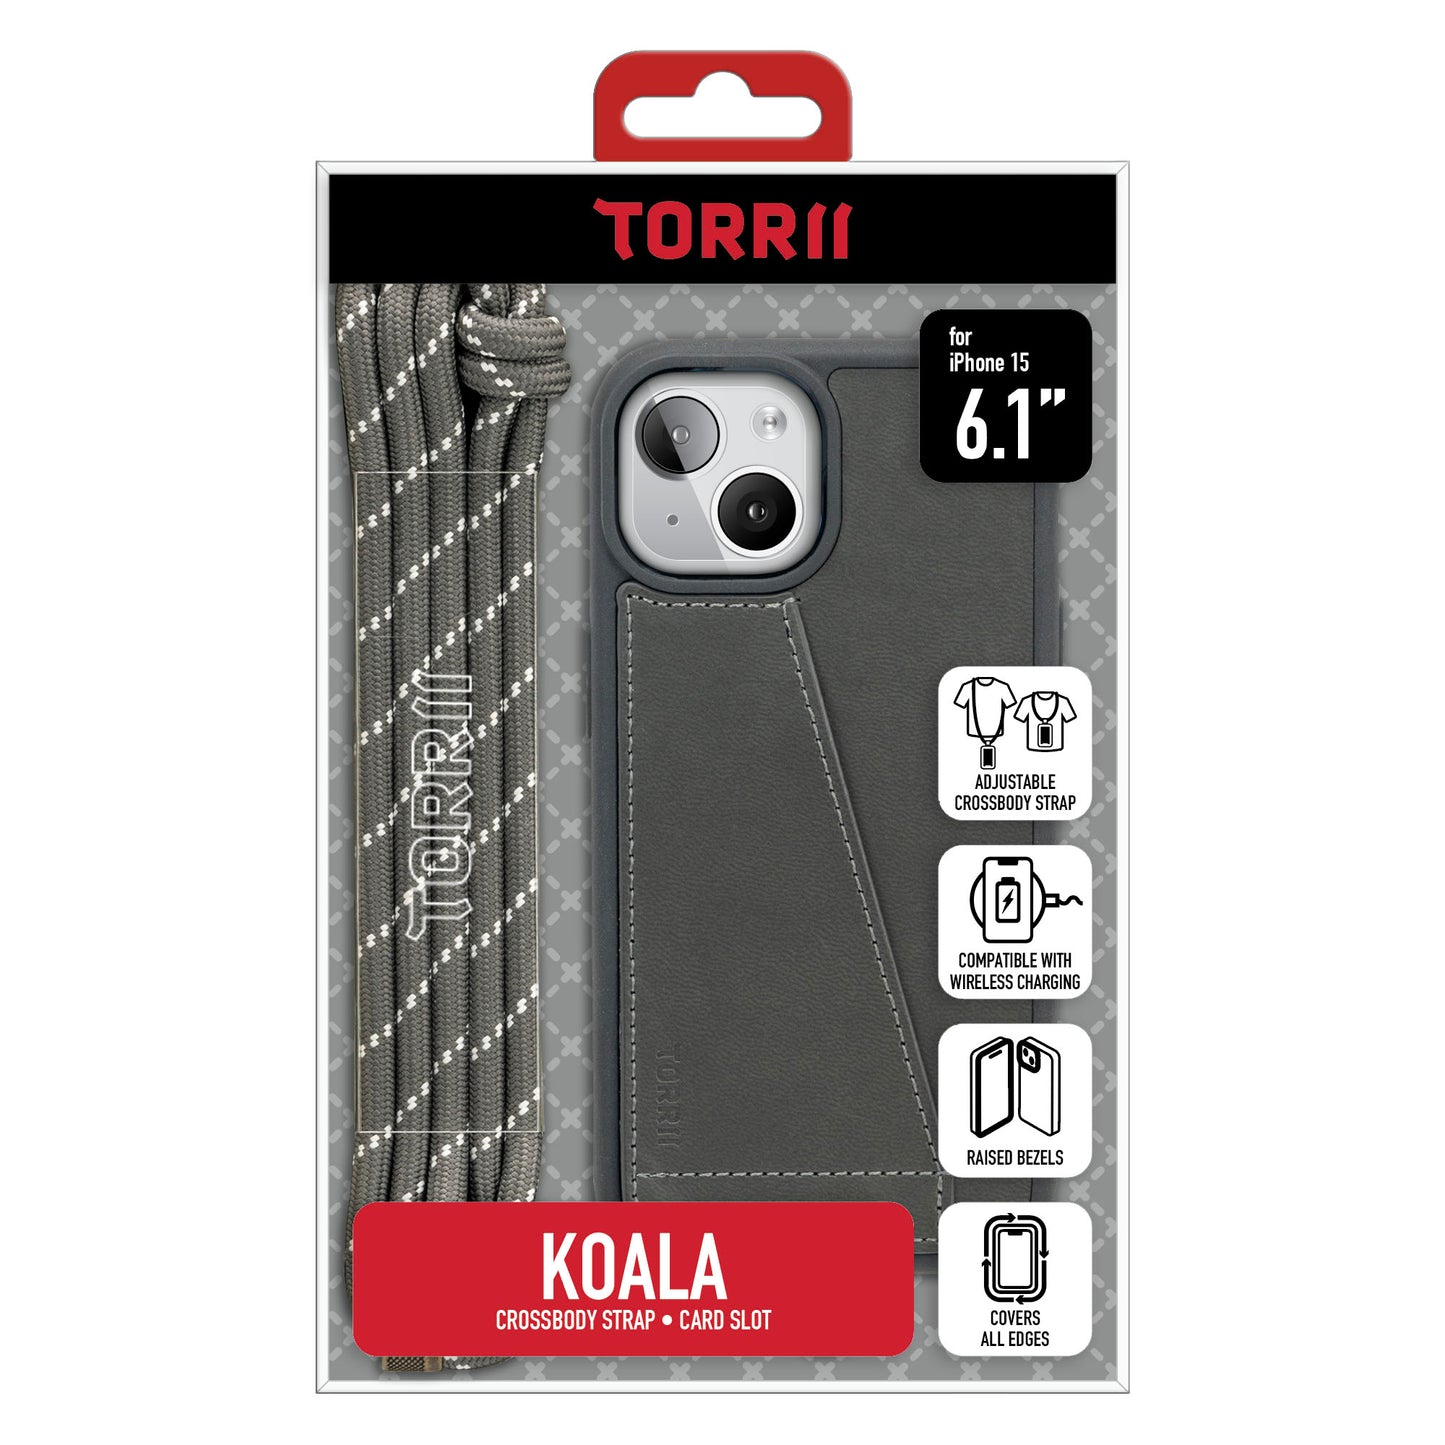 Torrii KOALA 皮革保護套 for iPhone 15 (灰色)